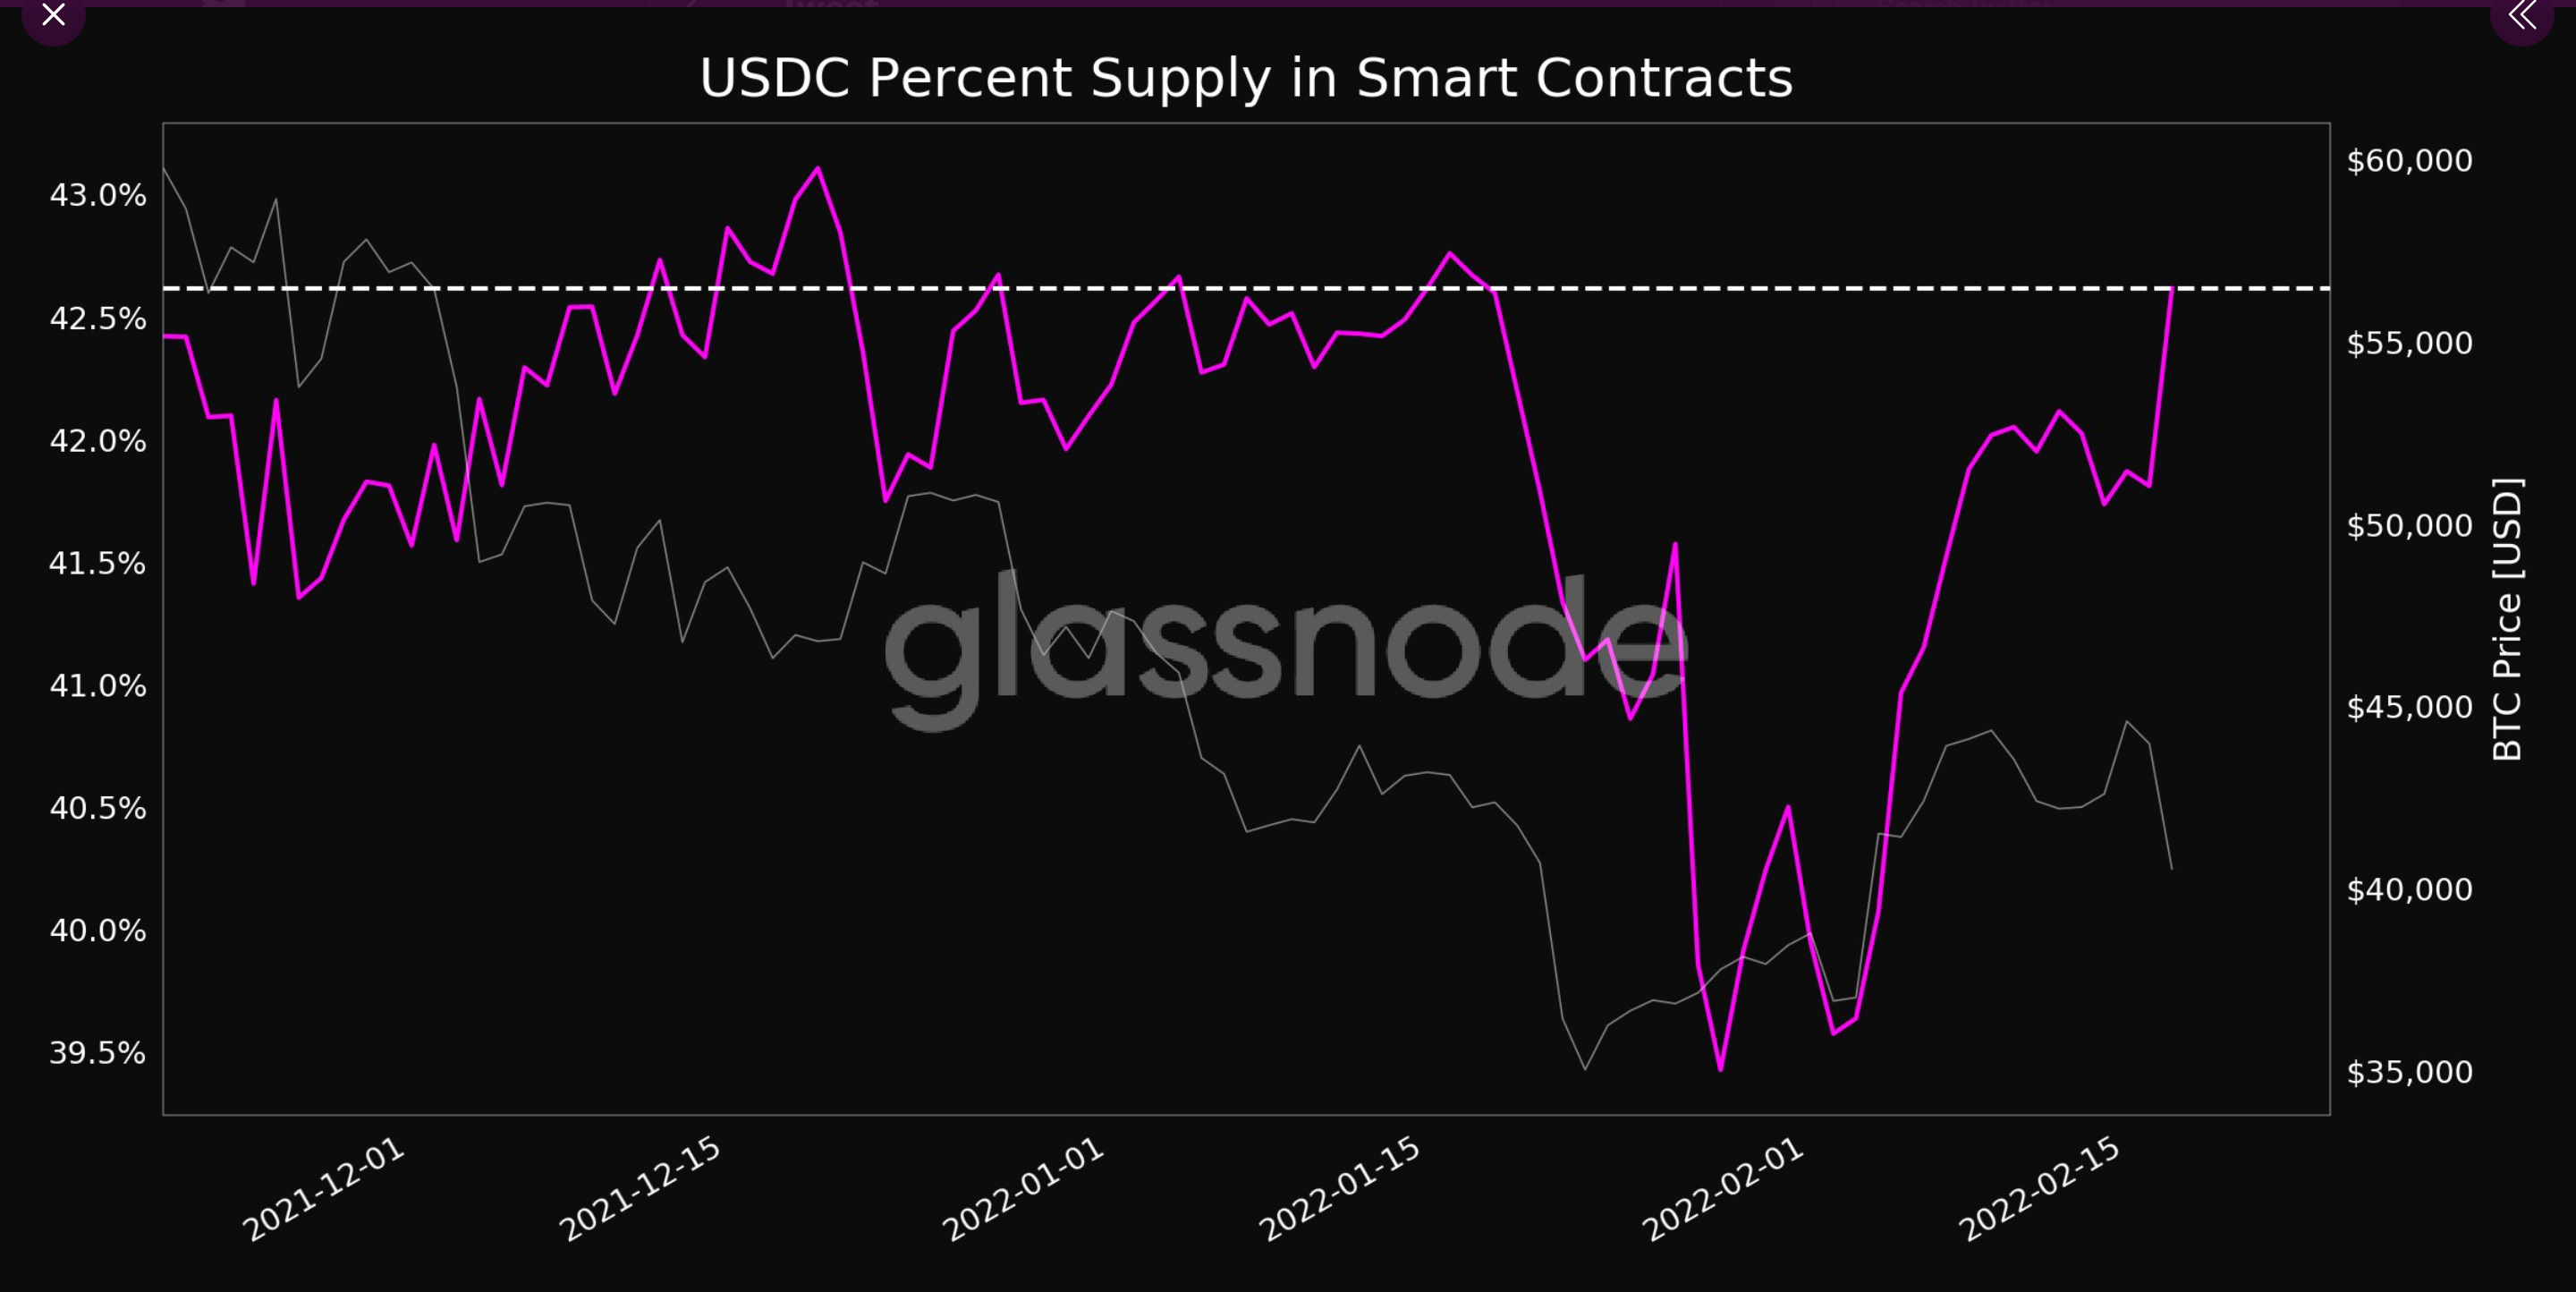 USDC escala nuevo máximo mensual en términos de oferta en contratos inteligentes gracias a...